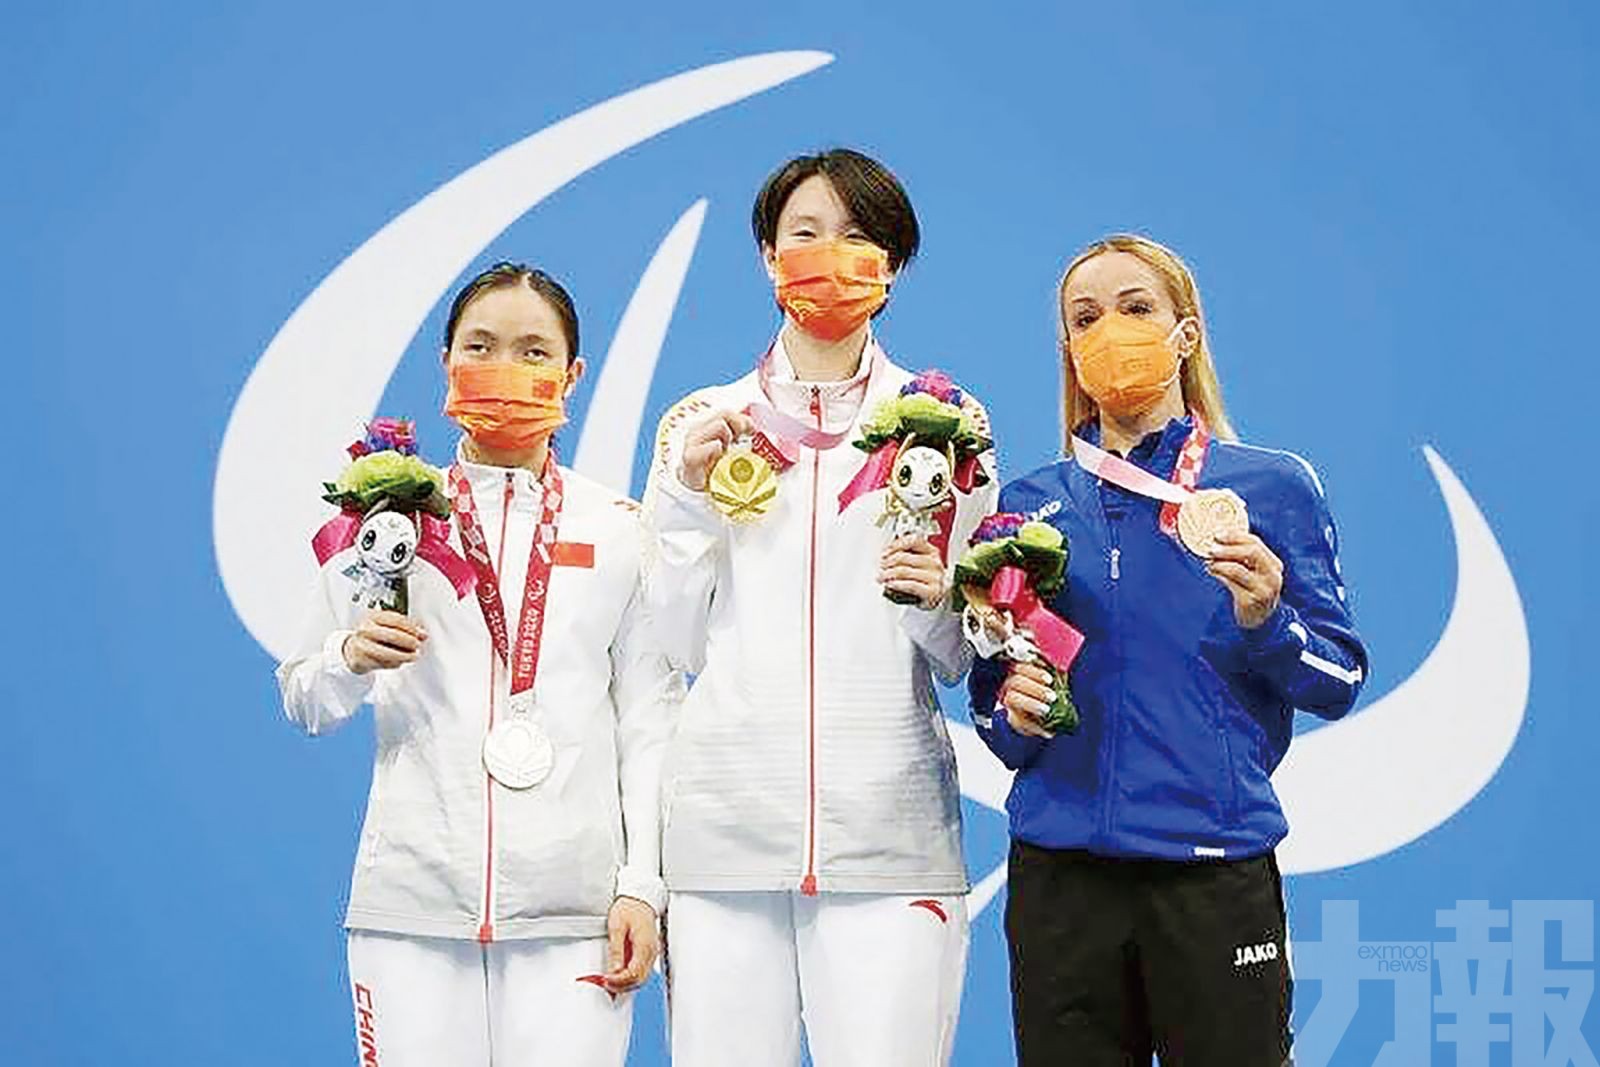 中國泳手重賽照奪金再破紀錄